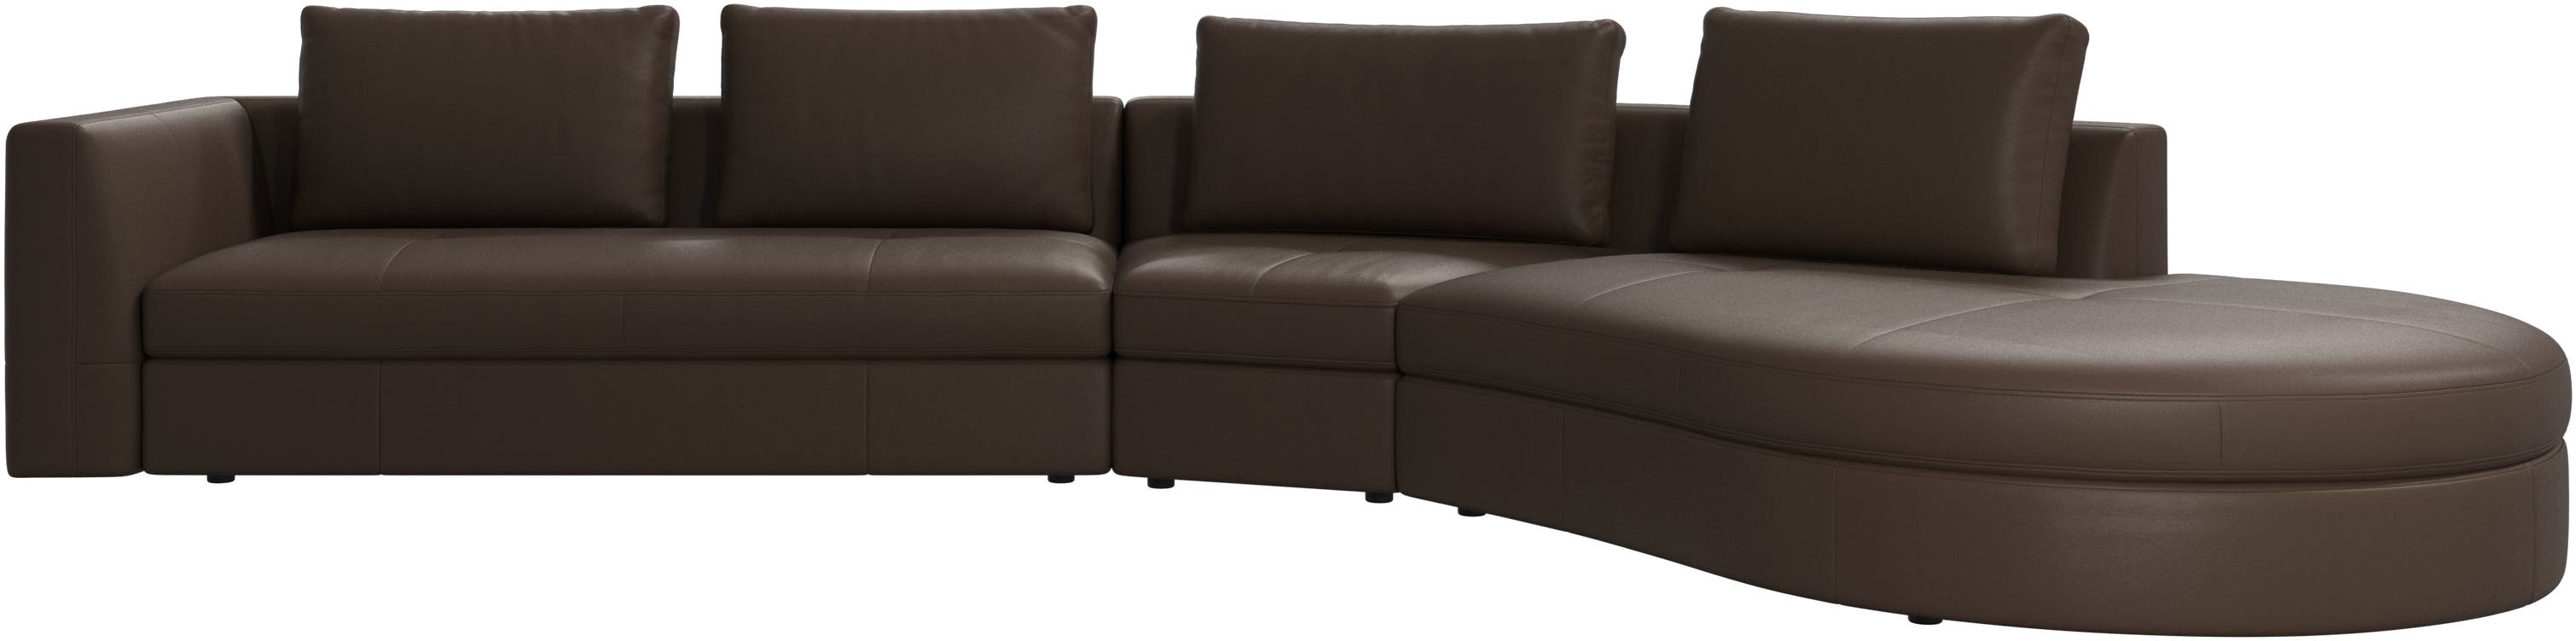 Bergamo sofa with round lounging unit,ライト